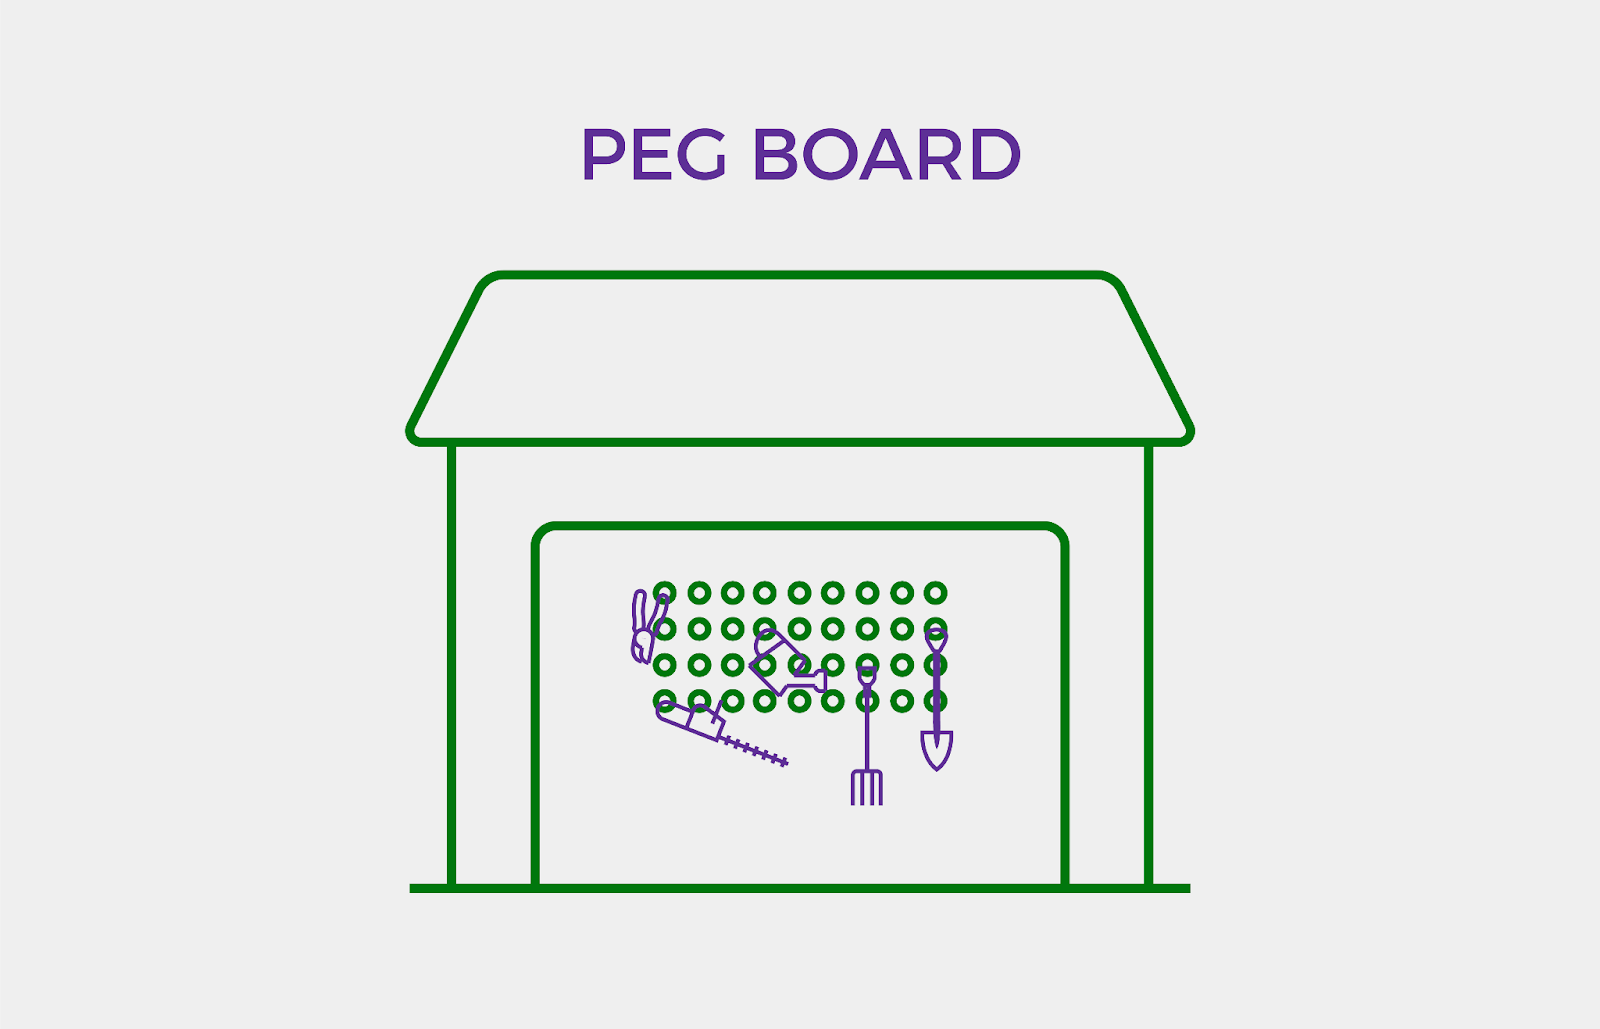 Peg board